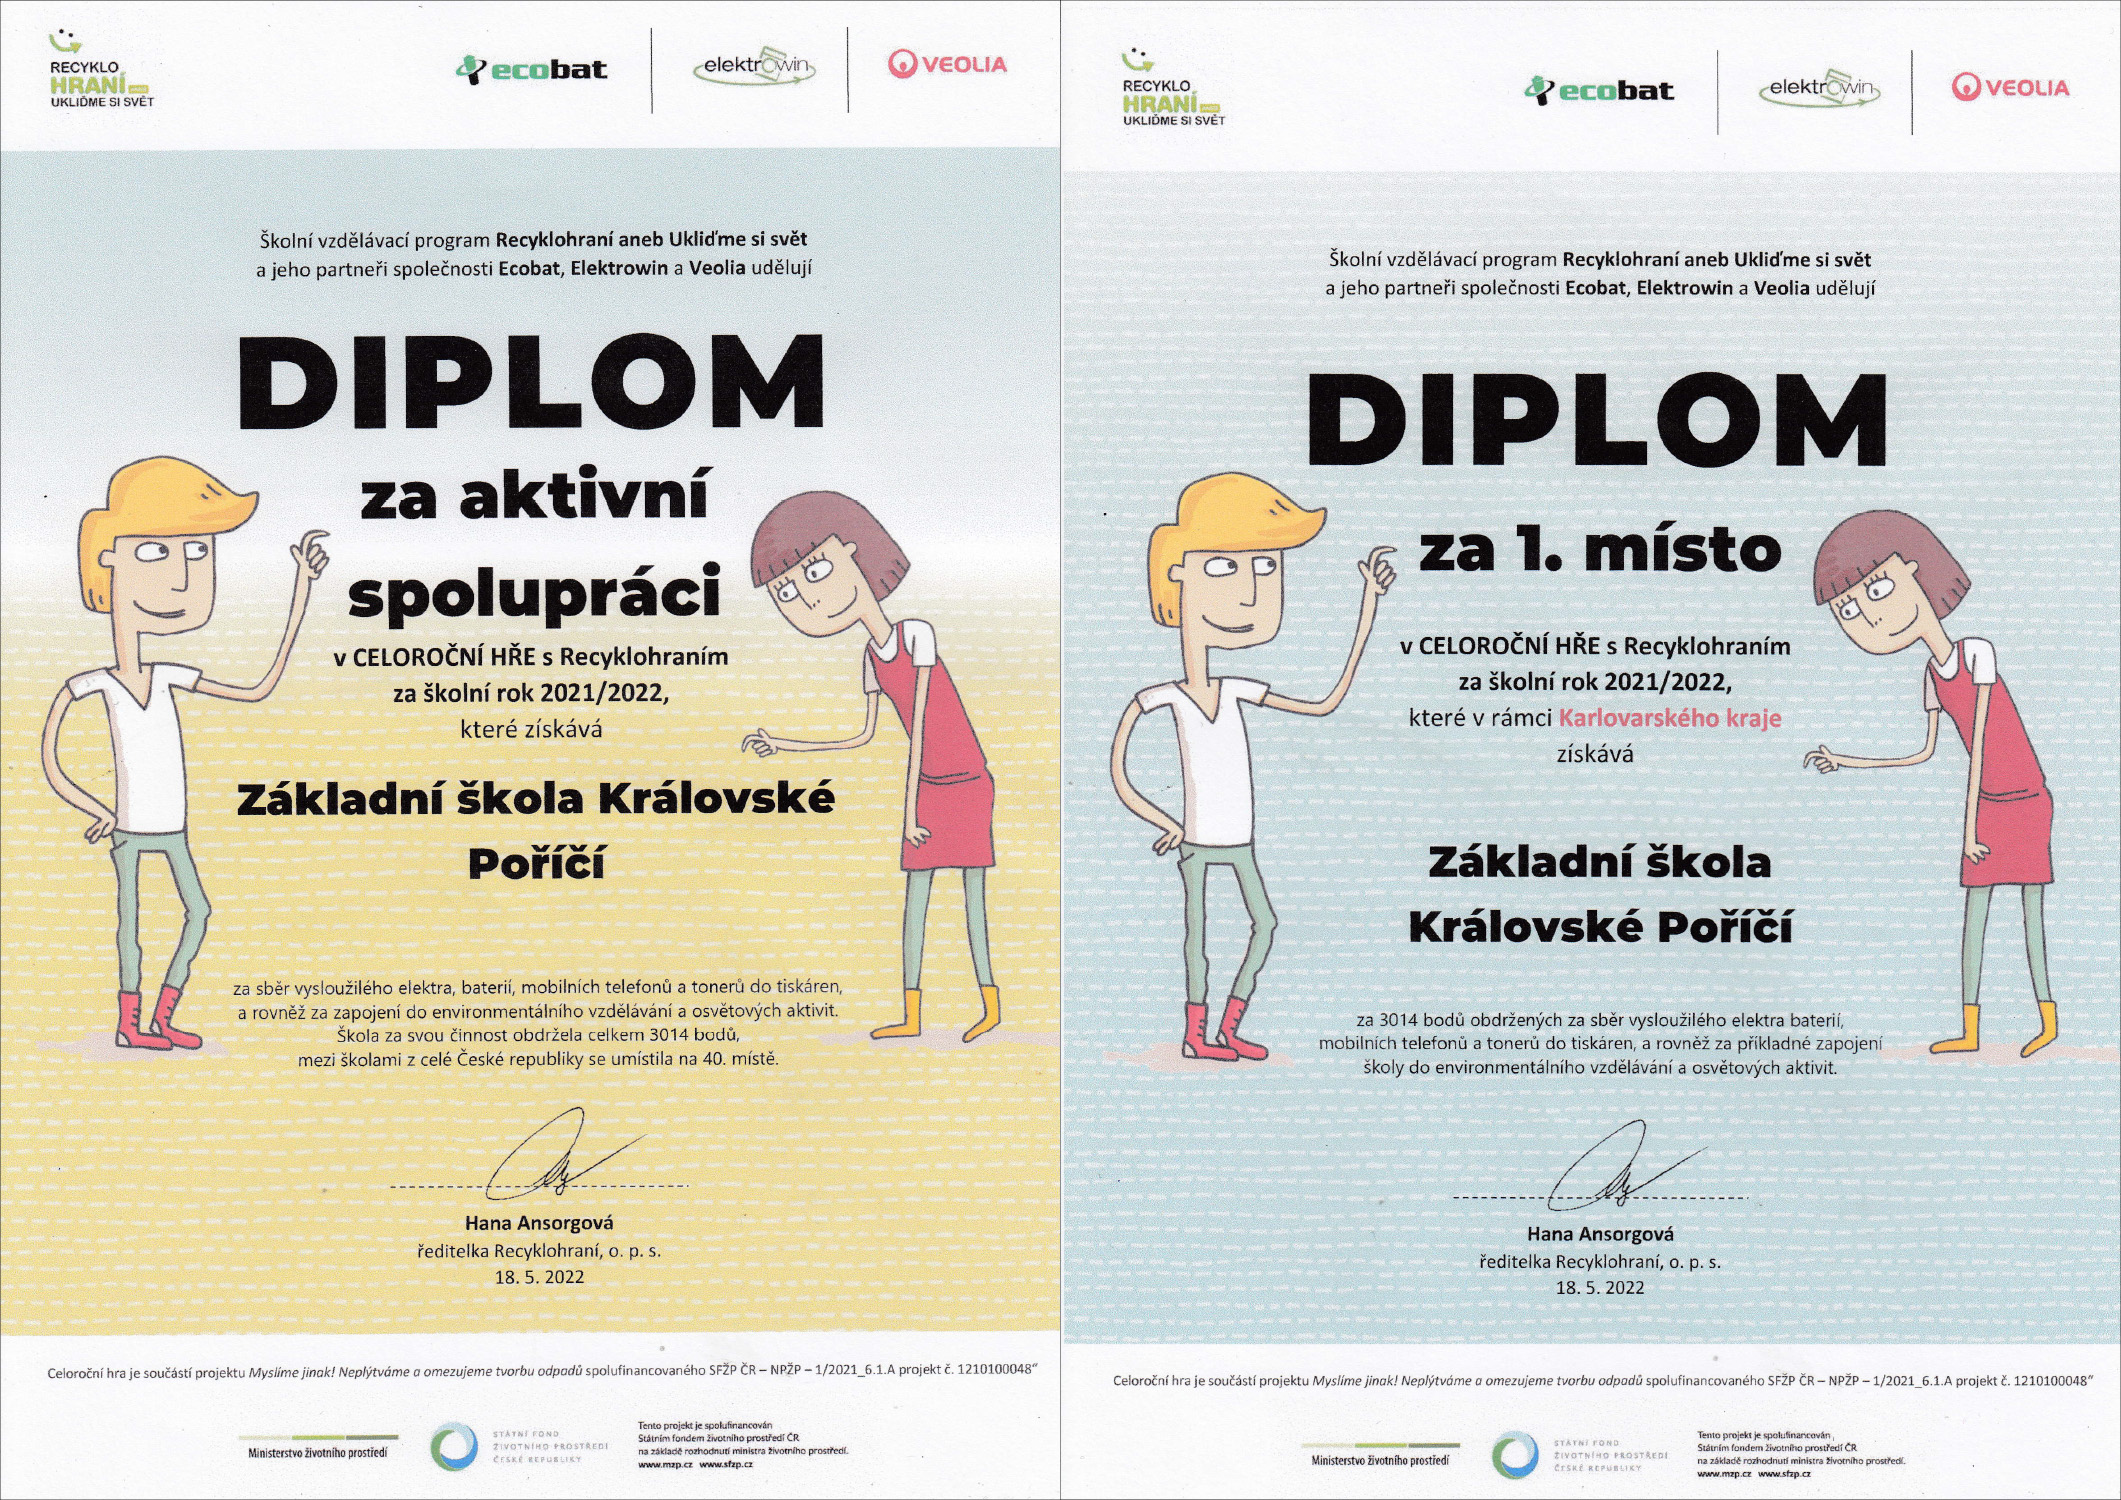 Diplom za 1. místo a spolupráci v projektu Recyklohraní